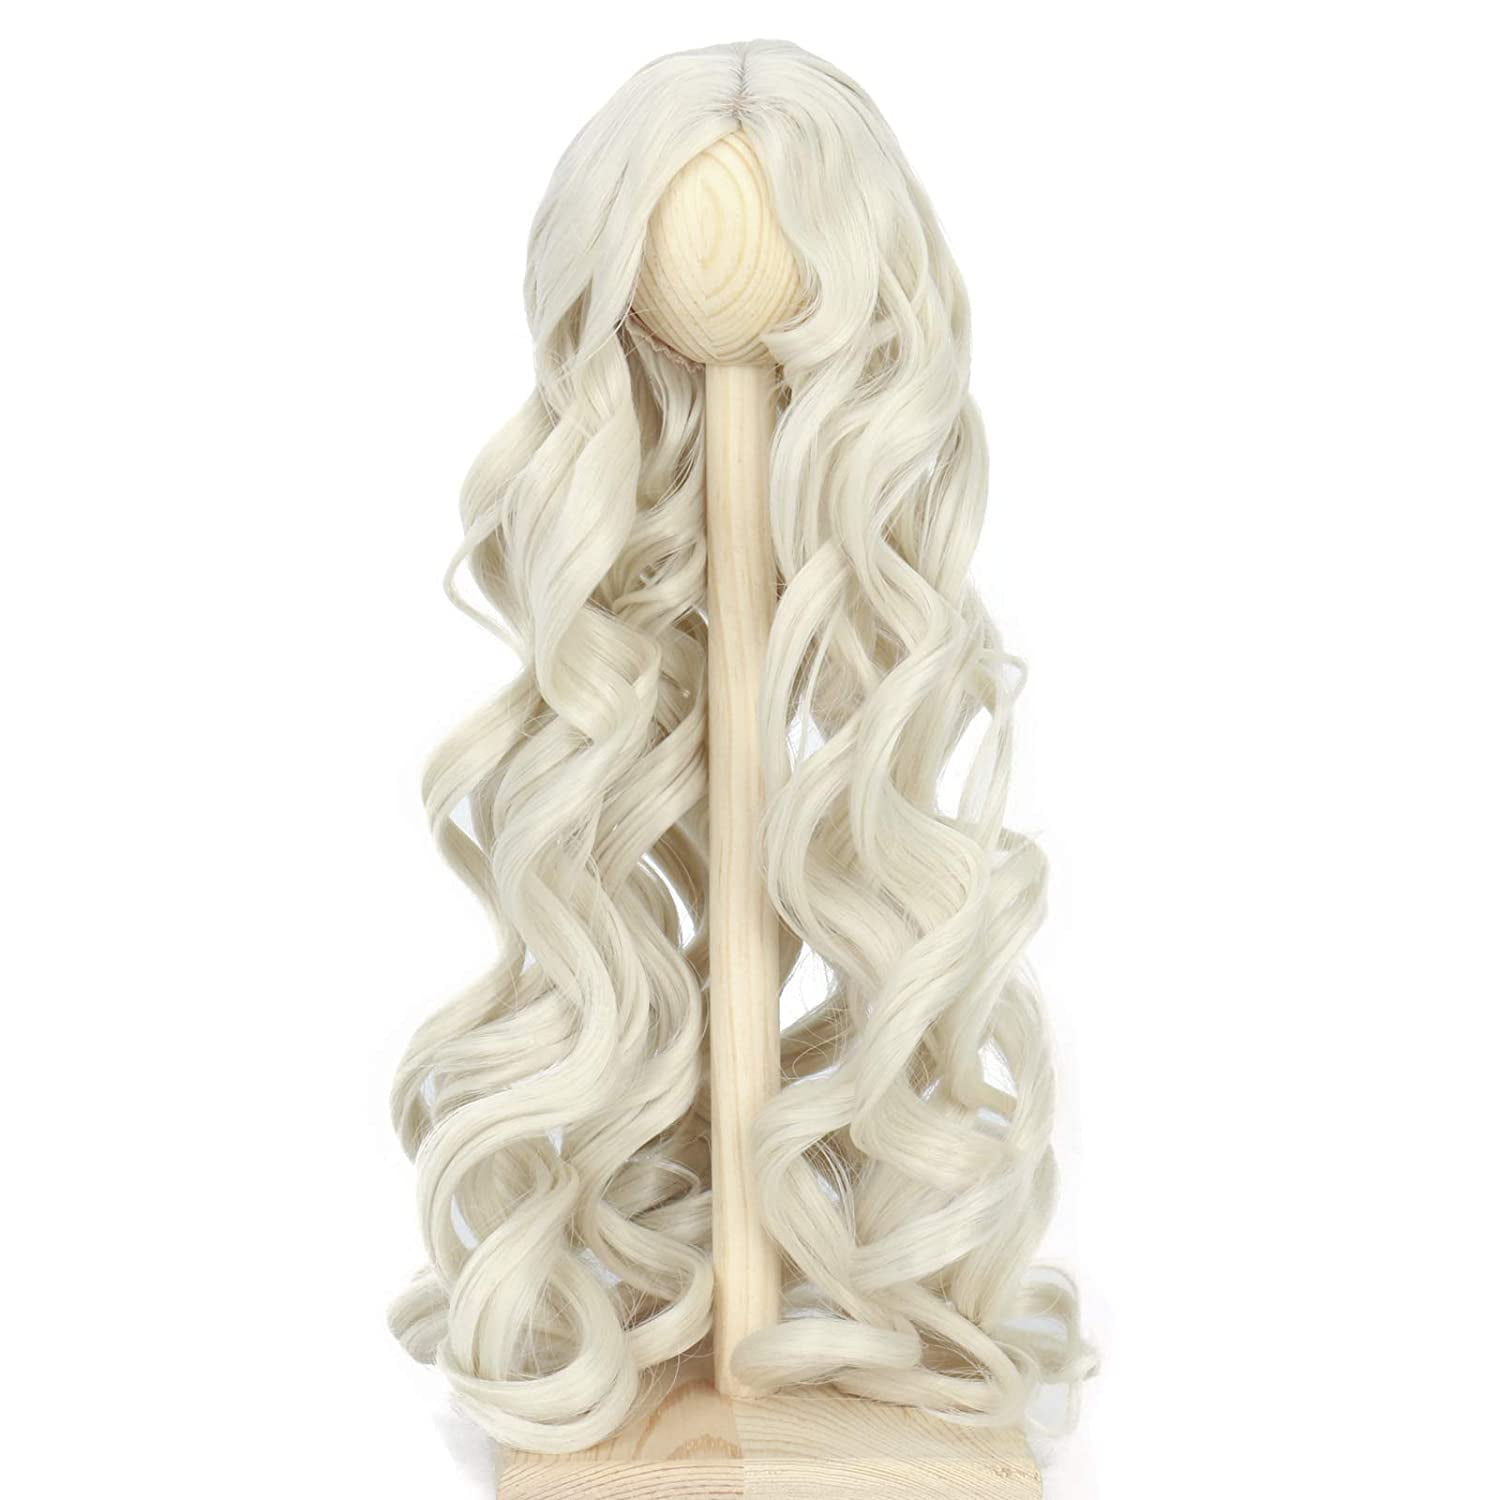 8-9" 1/3 BJD Hair IP SD doll wig Super Dollfie Natural blonde curls M-mohair 